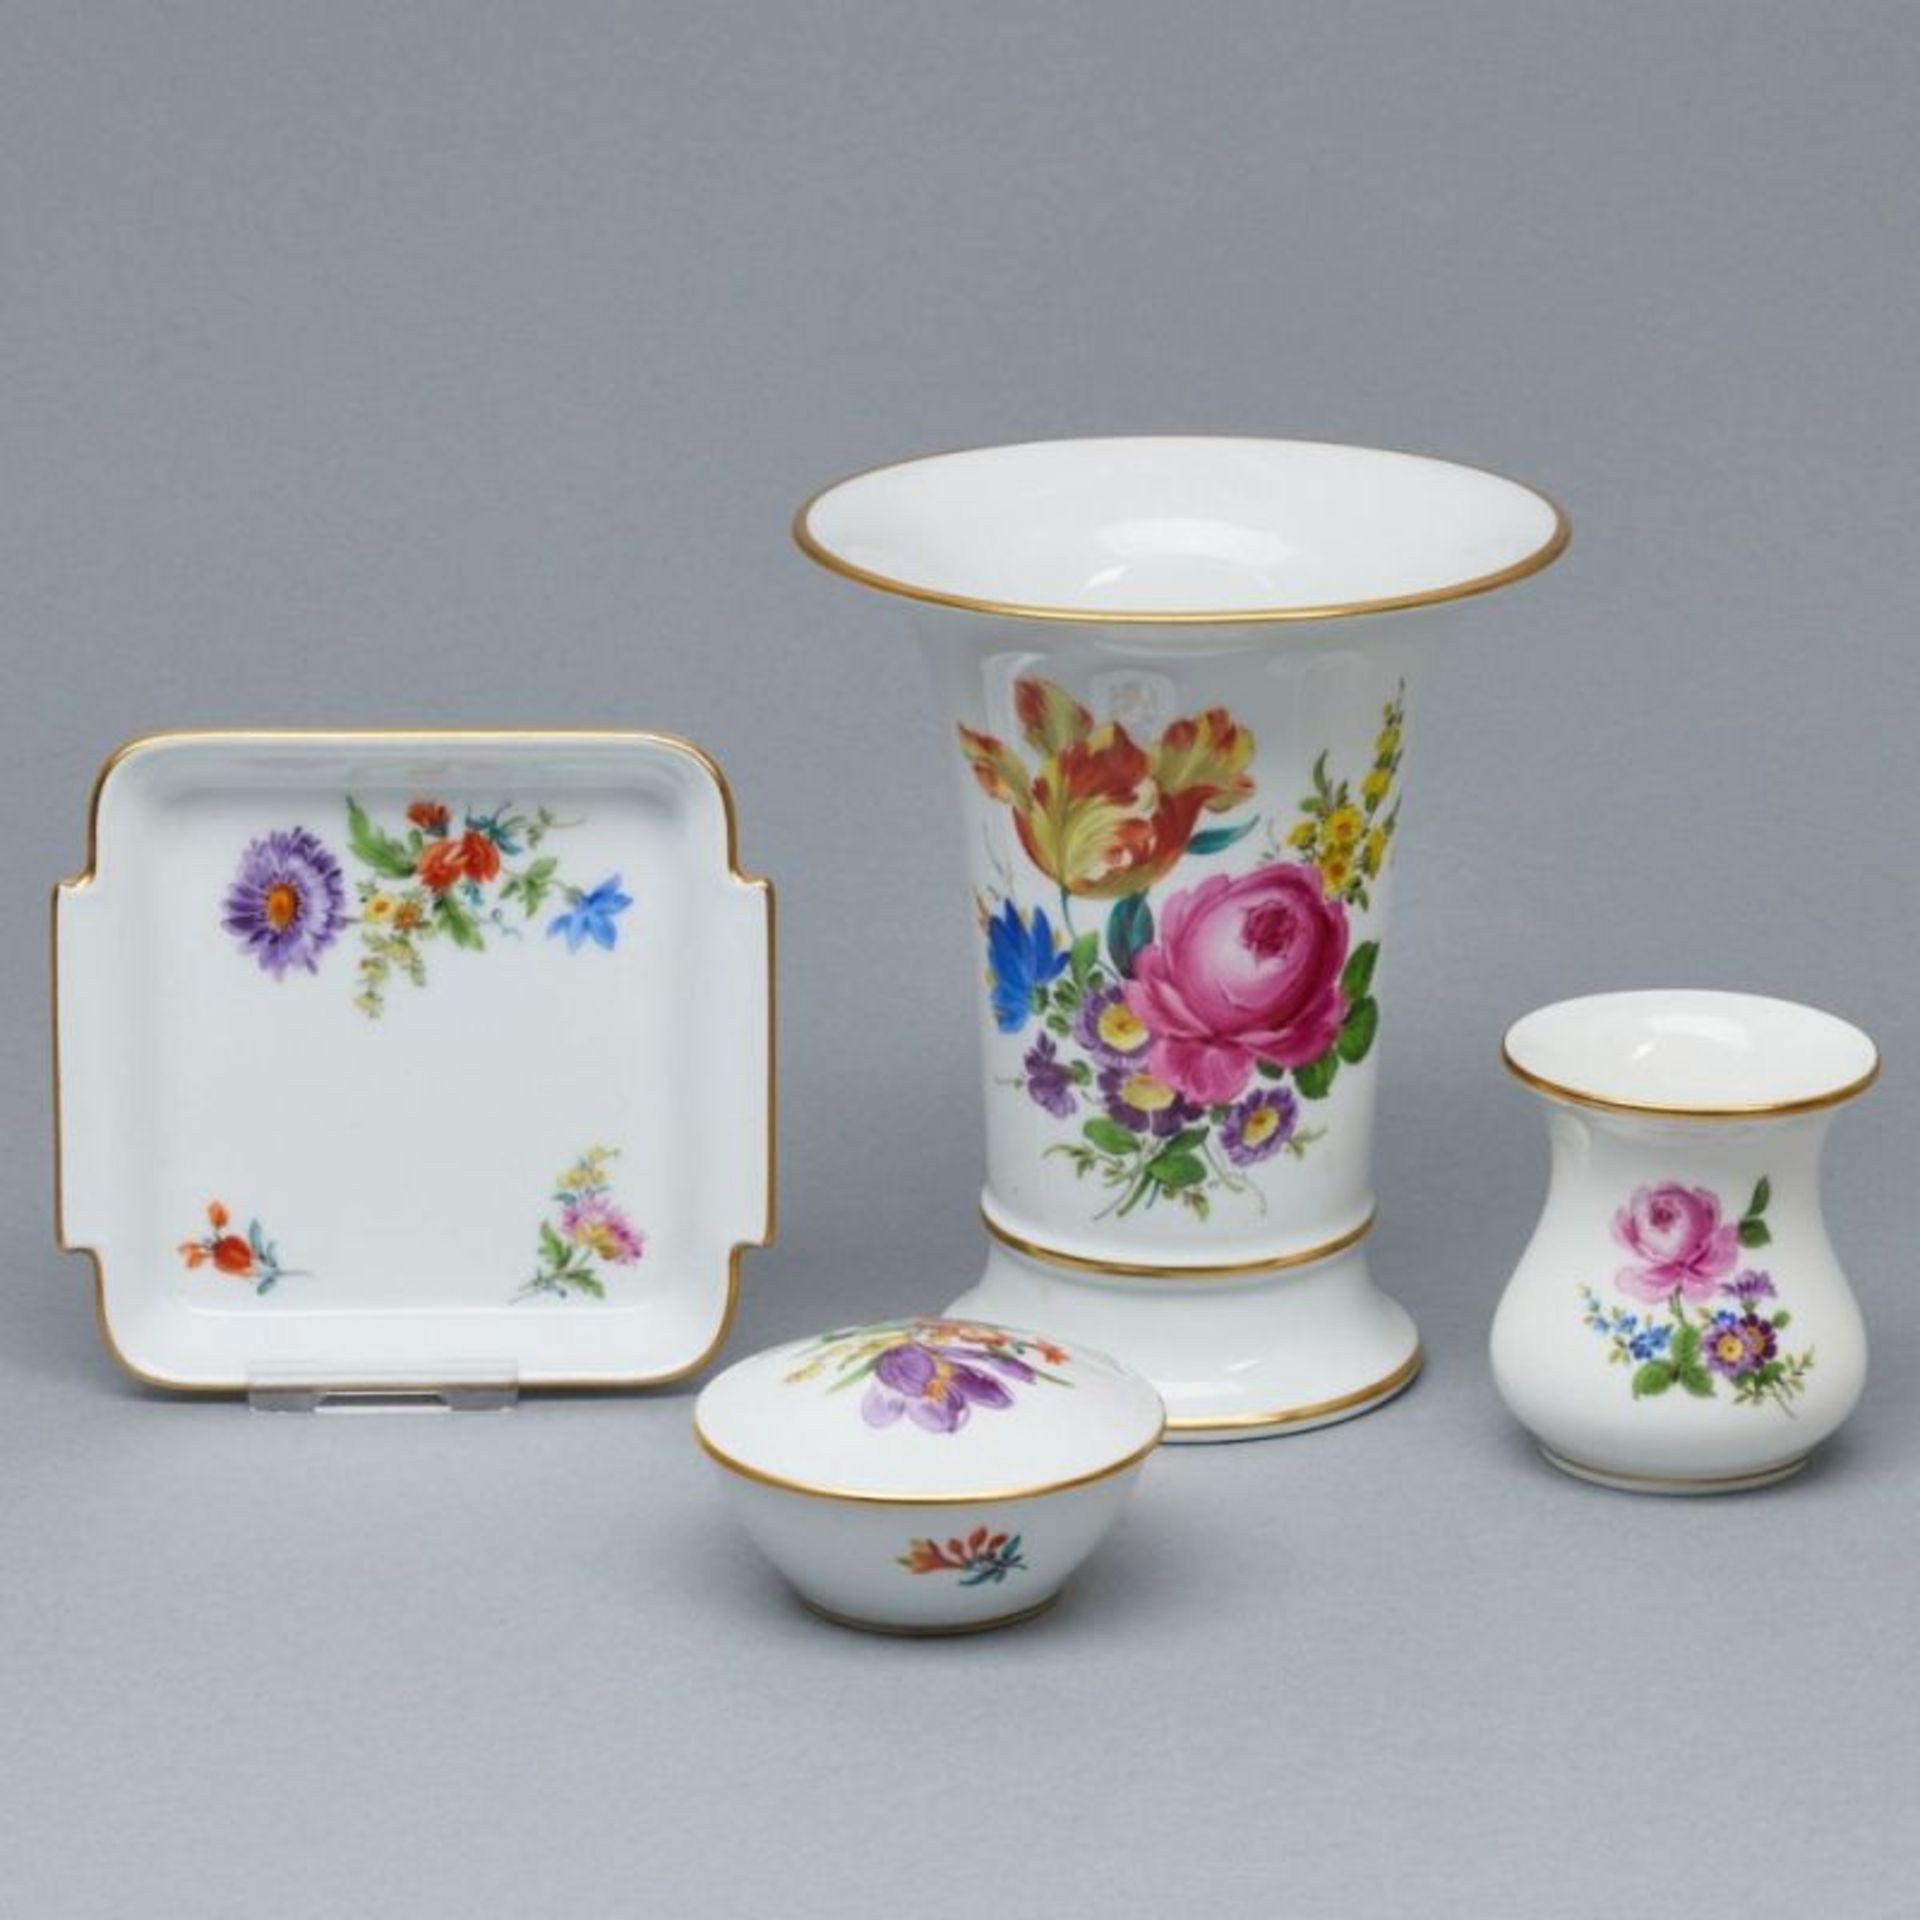 1 quadratische Schale, 1 kleine runde Deckeldose, 1 Bechervase, 1 kleine Vase. Meissen 1957-1972.